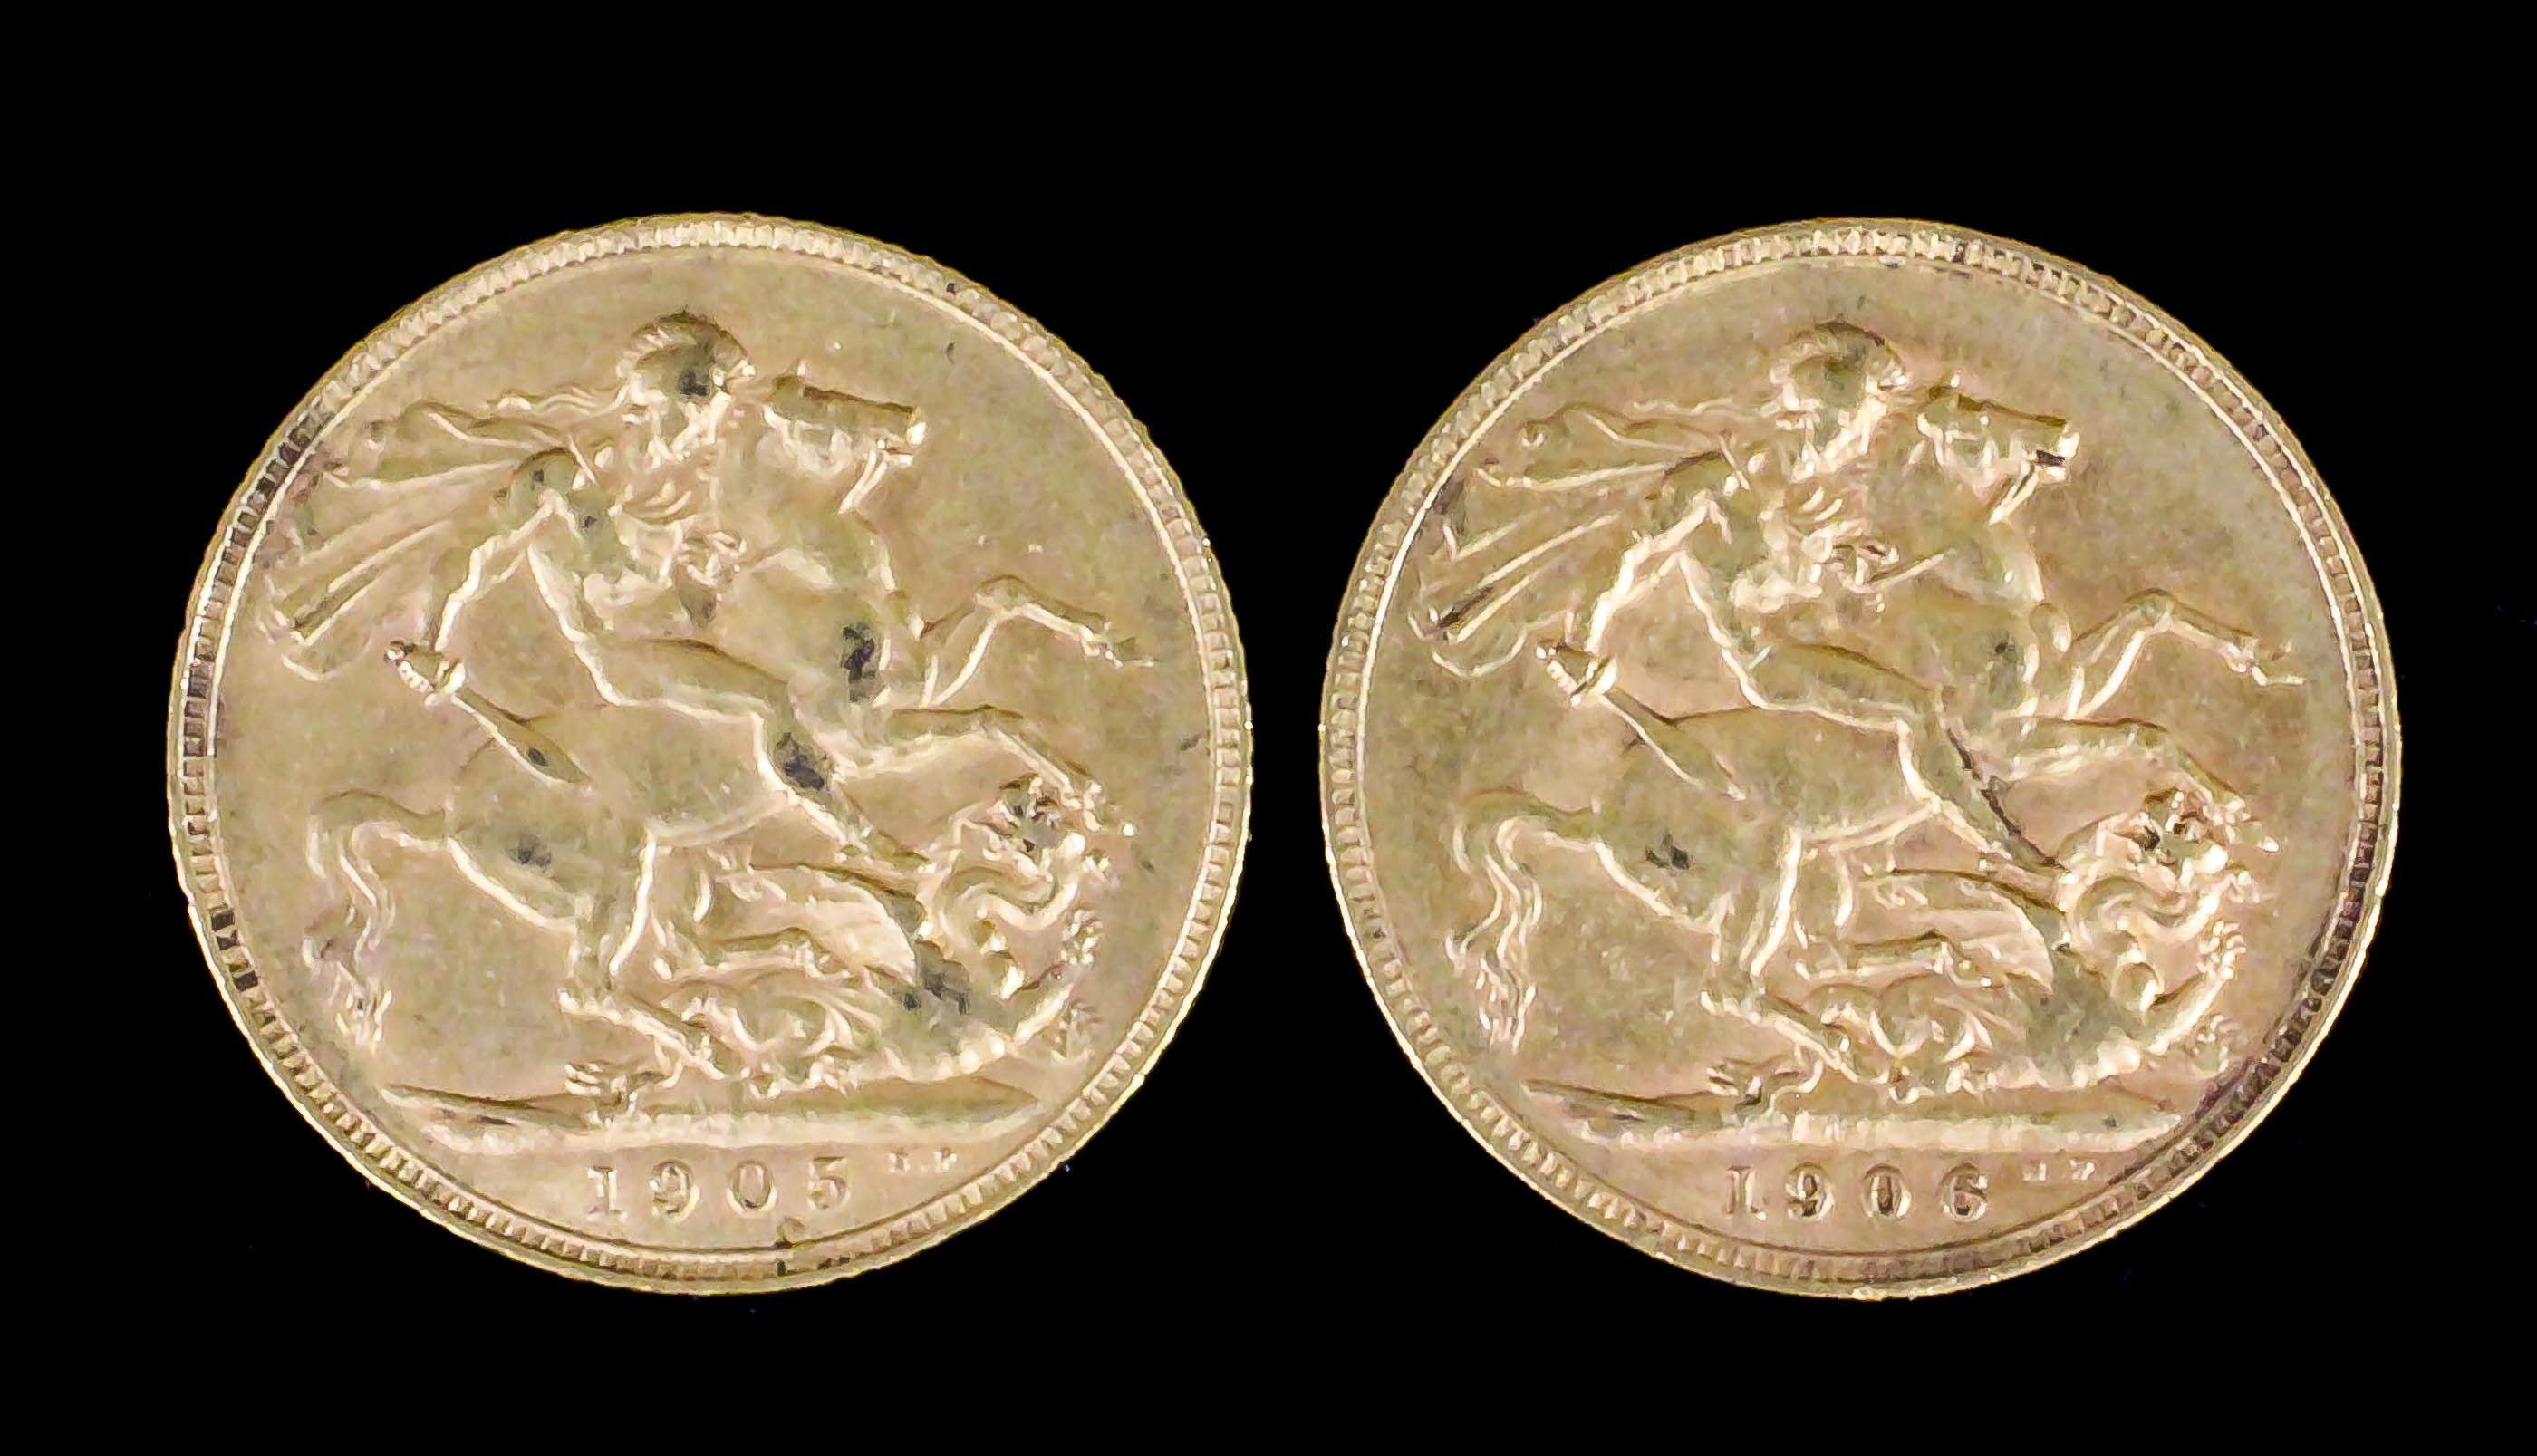 An Edward VII 1905 Sovereign and an Edward VII 1906 Sovereign (both Fine - with slight edge knocks)